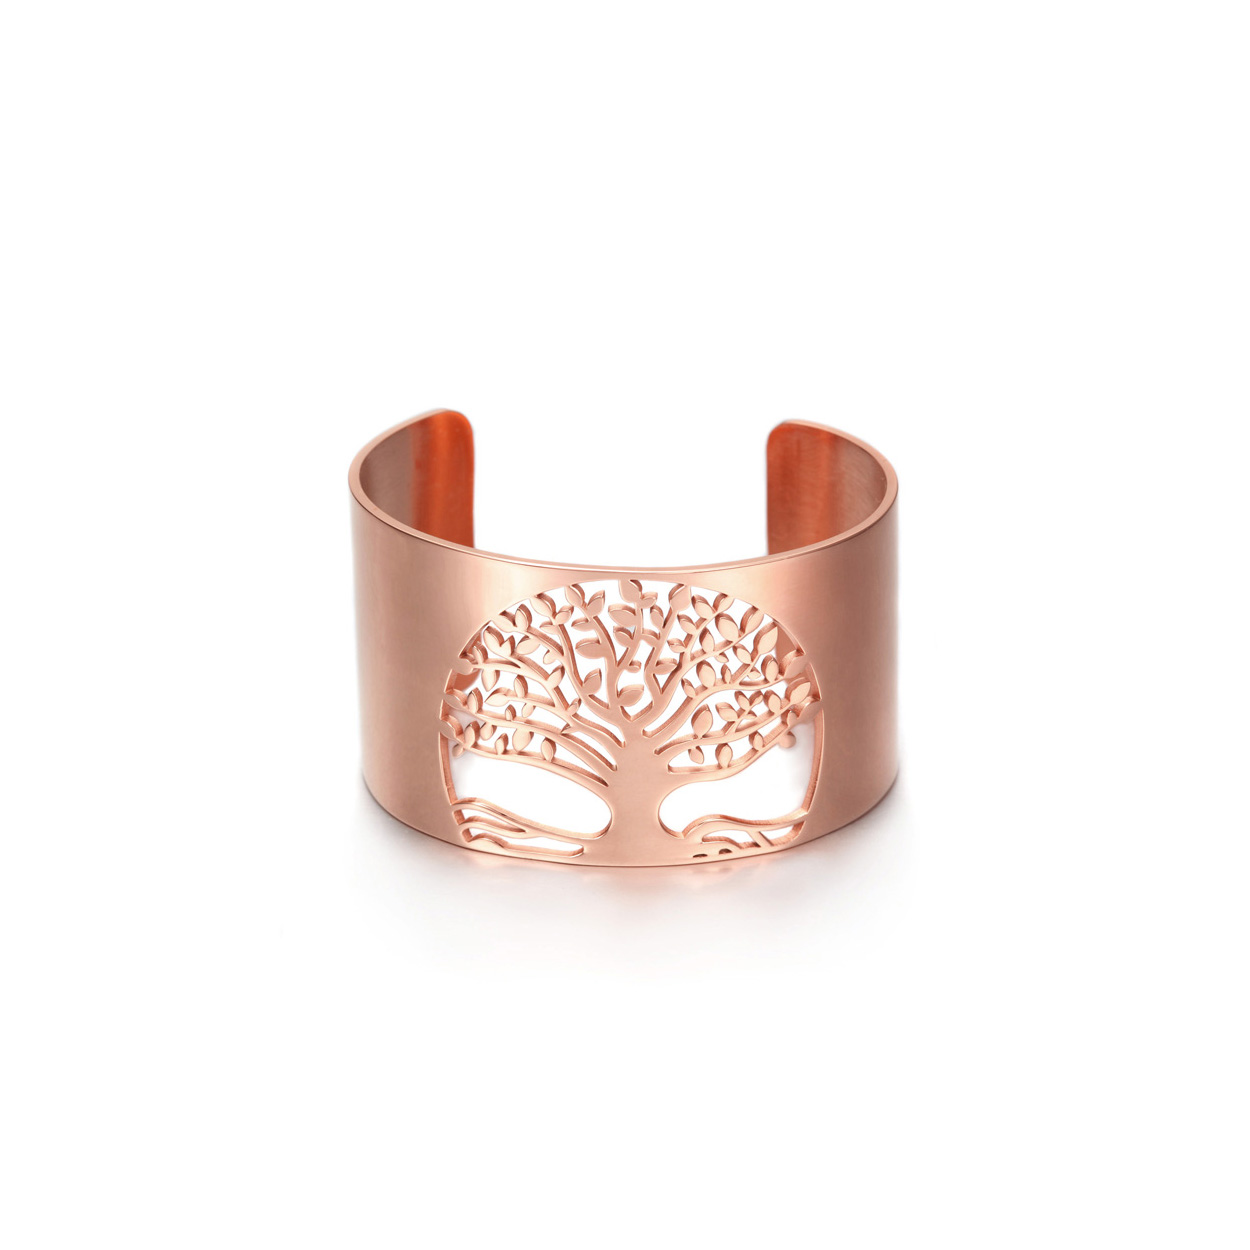 Tree Of Life Bracelet / Rose Gold Cuff / Wide Cuff Bracelet / Cuff Bracelet / Rose Gold Bracelet / Thick Bracelet / Boho Jewelry / Open Cuff